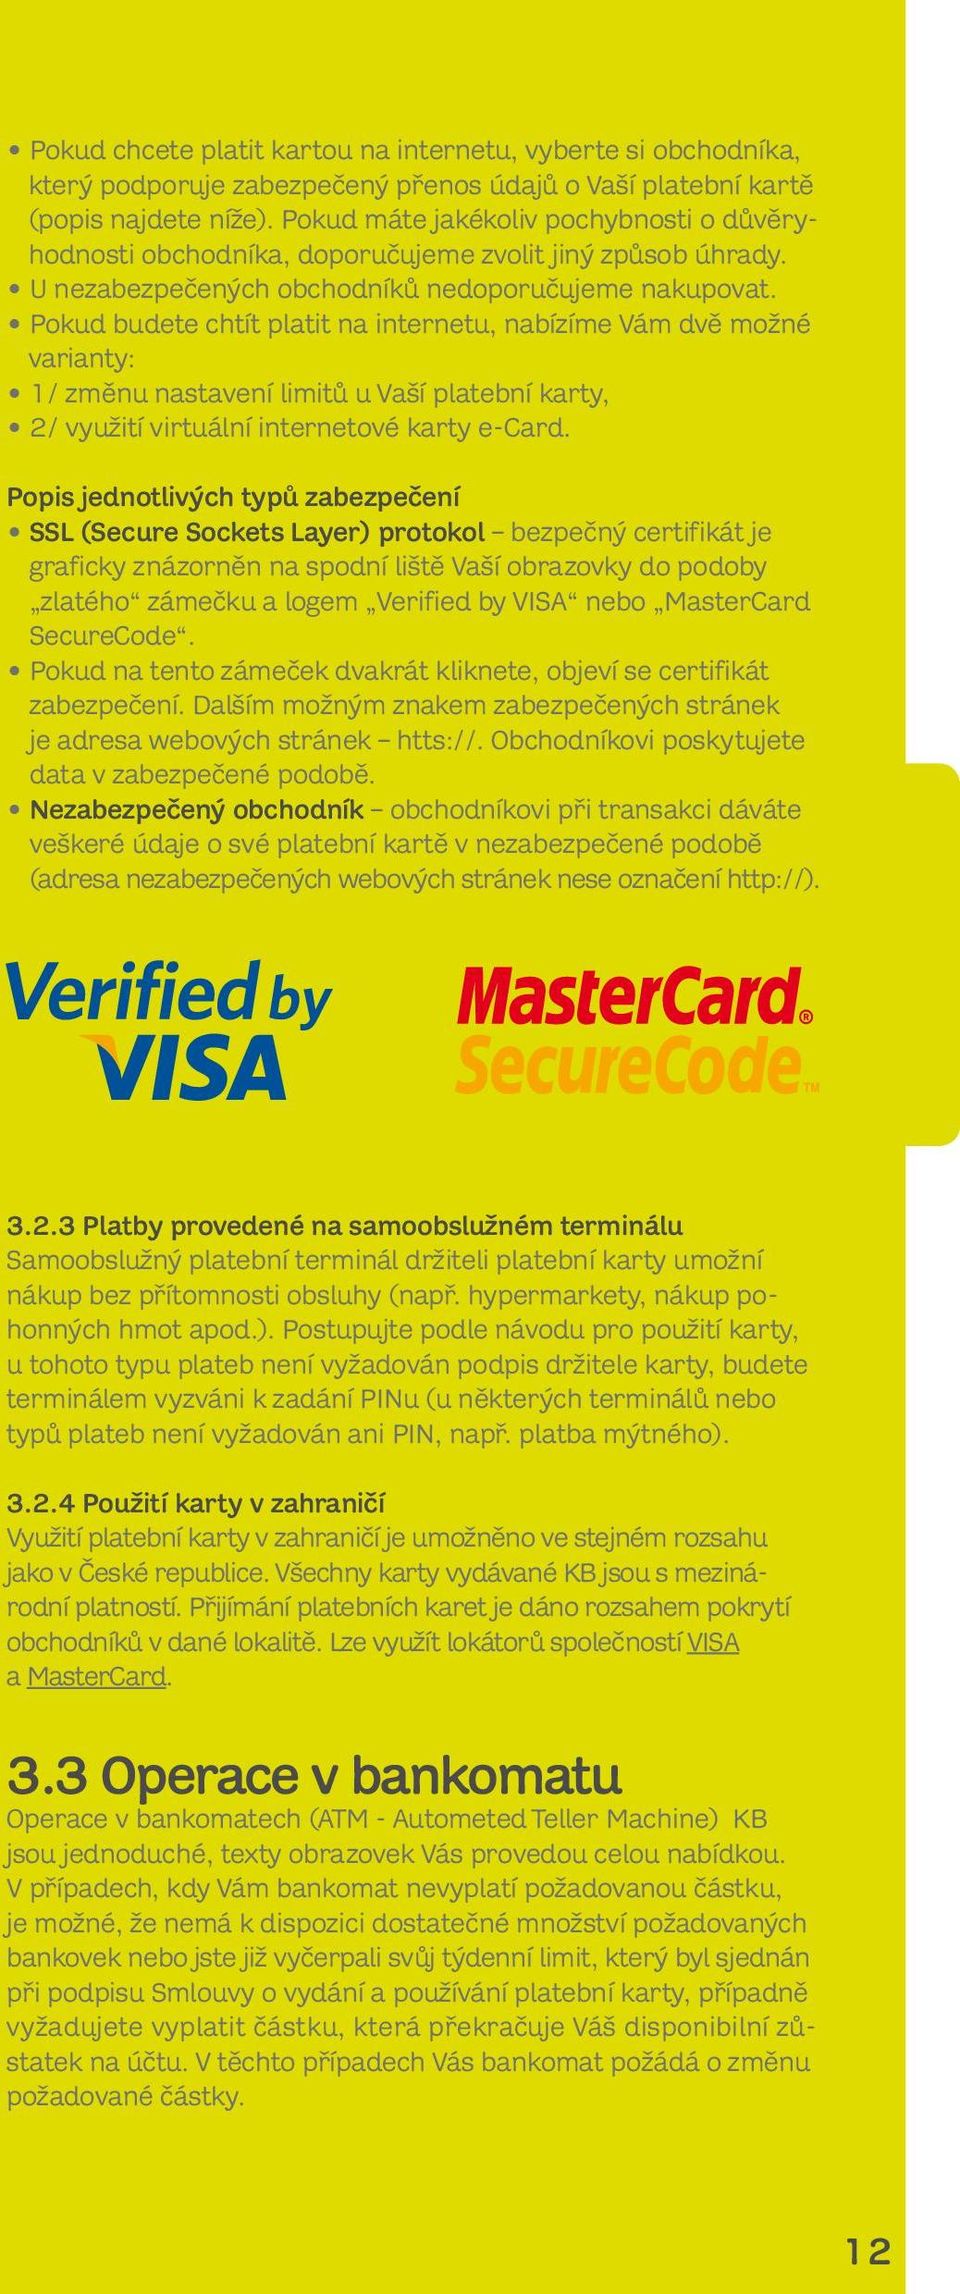 Pokud budete chtít platit na internetu, nabízíme Vám dvě možné varianty: 1/ změnu nastavení limitů u Vaší platební karty, 2/ využití virtuální internetové karty e-card.